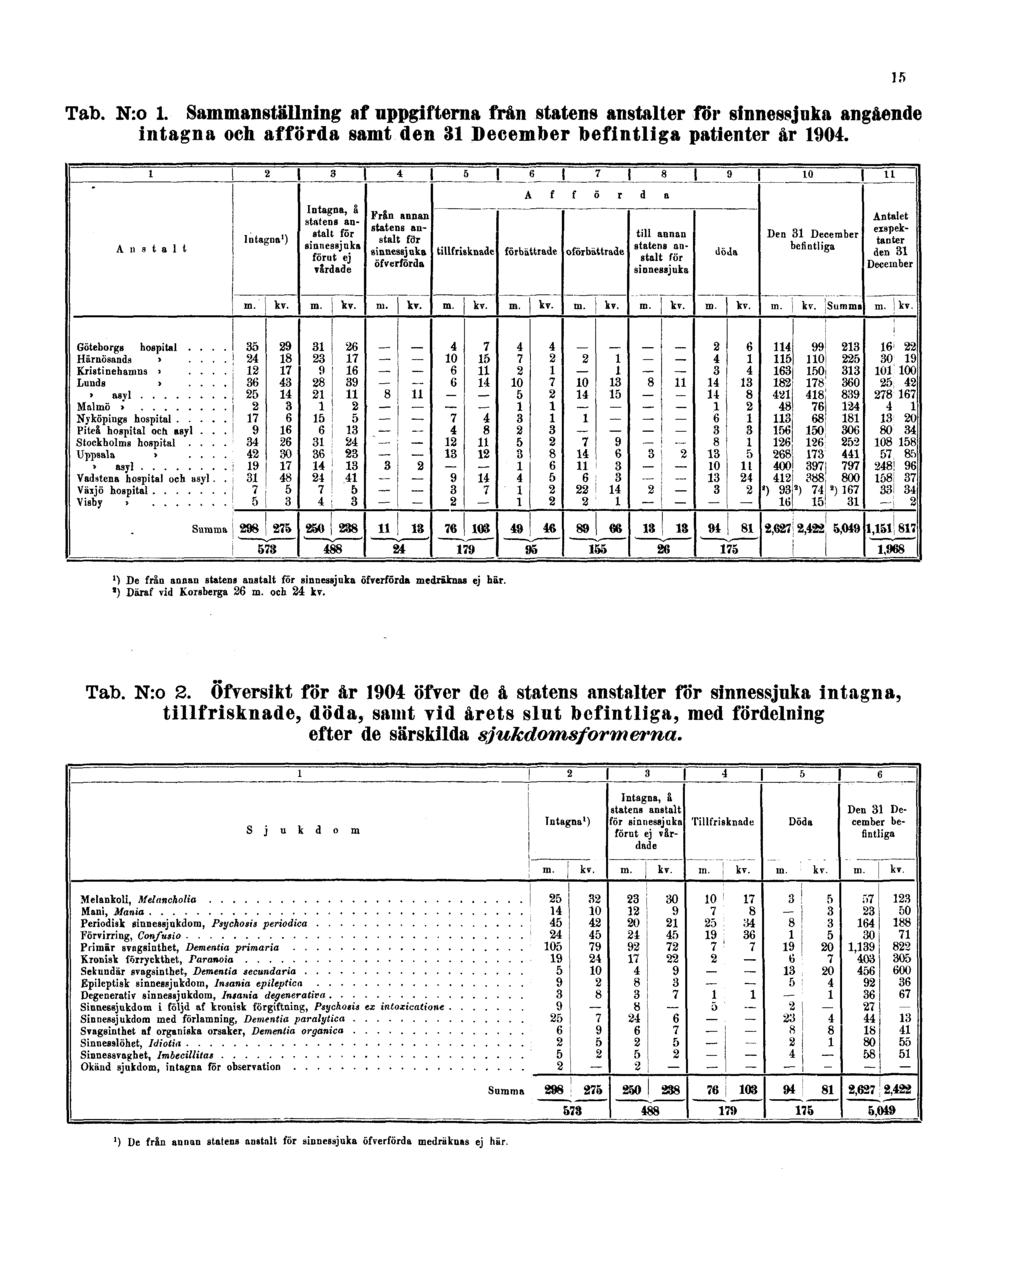 Tab. N:o 1. Sammanställning af uppgifterna från statens anstalter för sinnessjuka angående intagna och afförda samt den 31 December befintliga patienter år 1904.